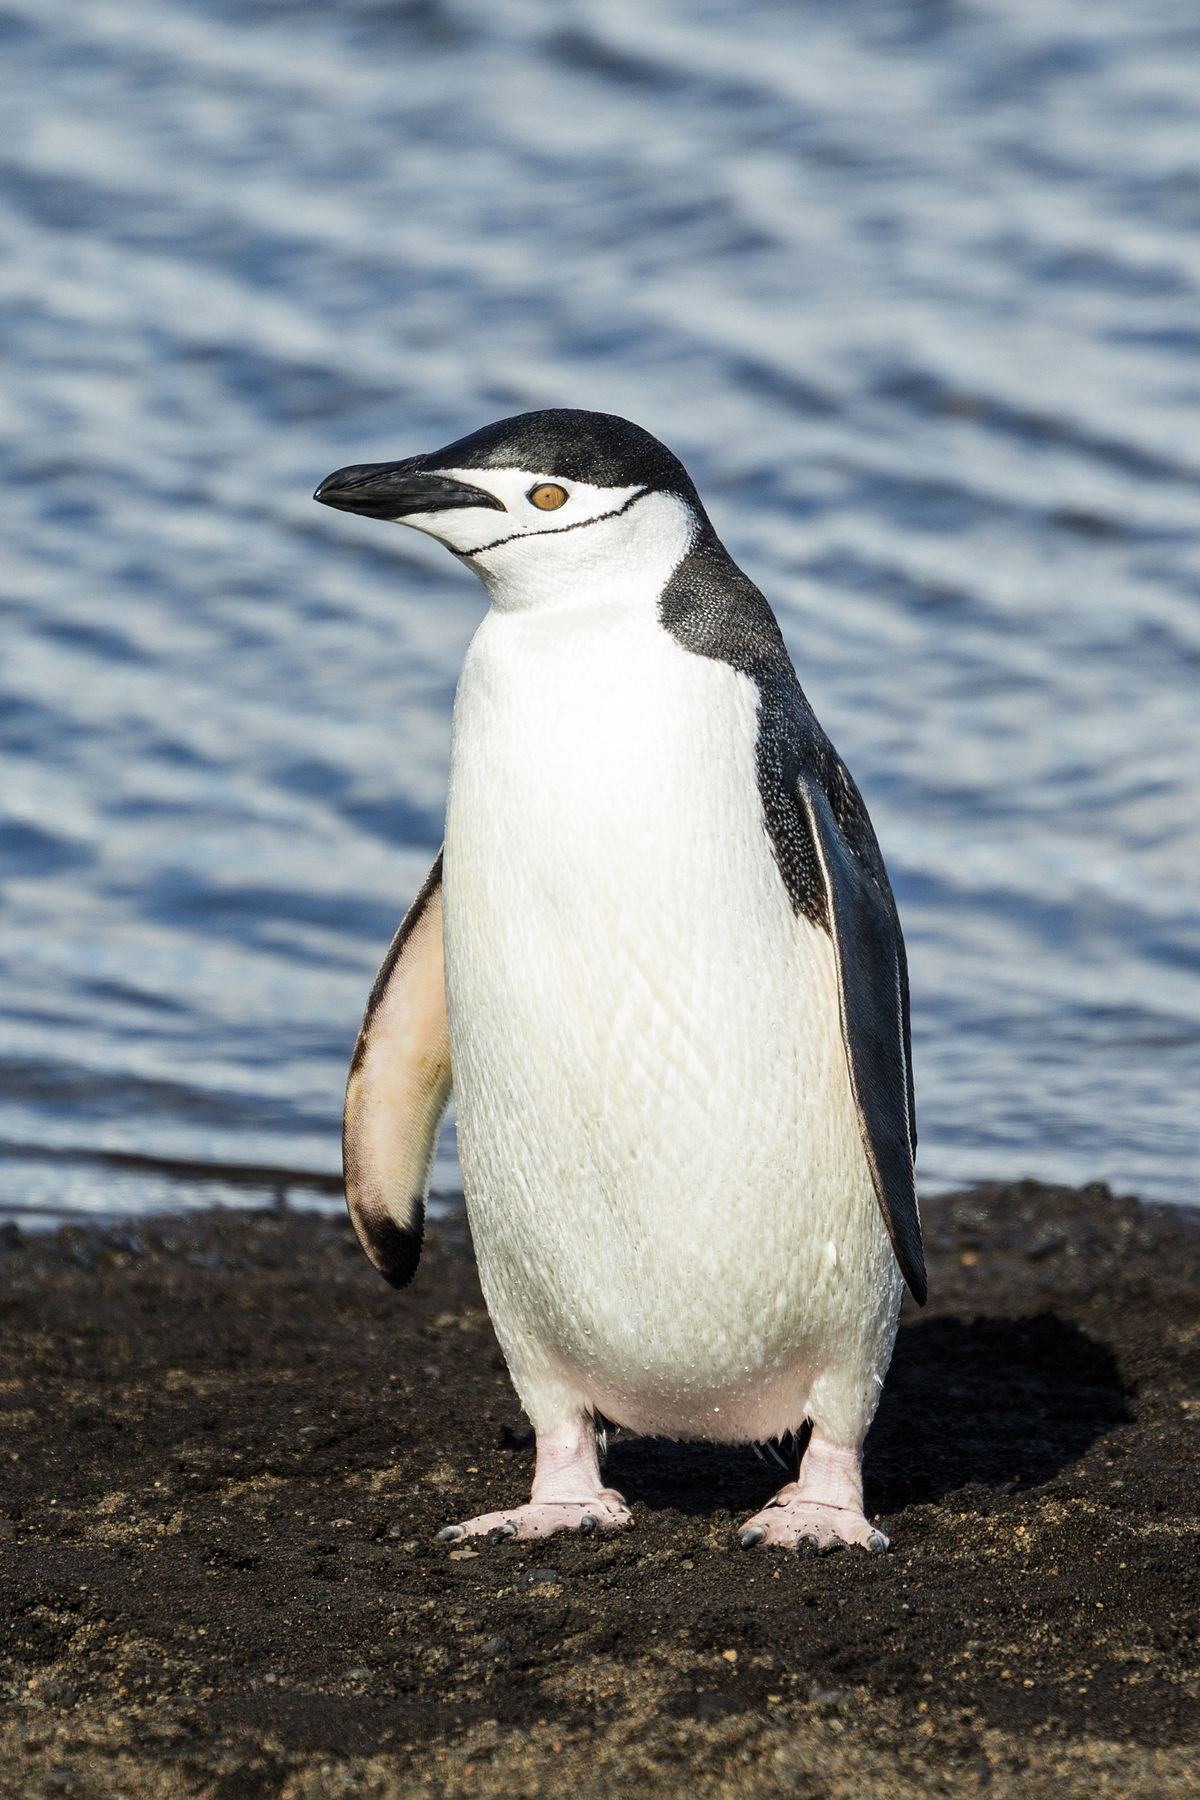 Chim cánh cụt đứng trên mặt đất với khuôn mặt ngu ngốc